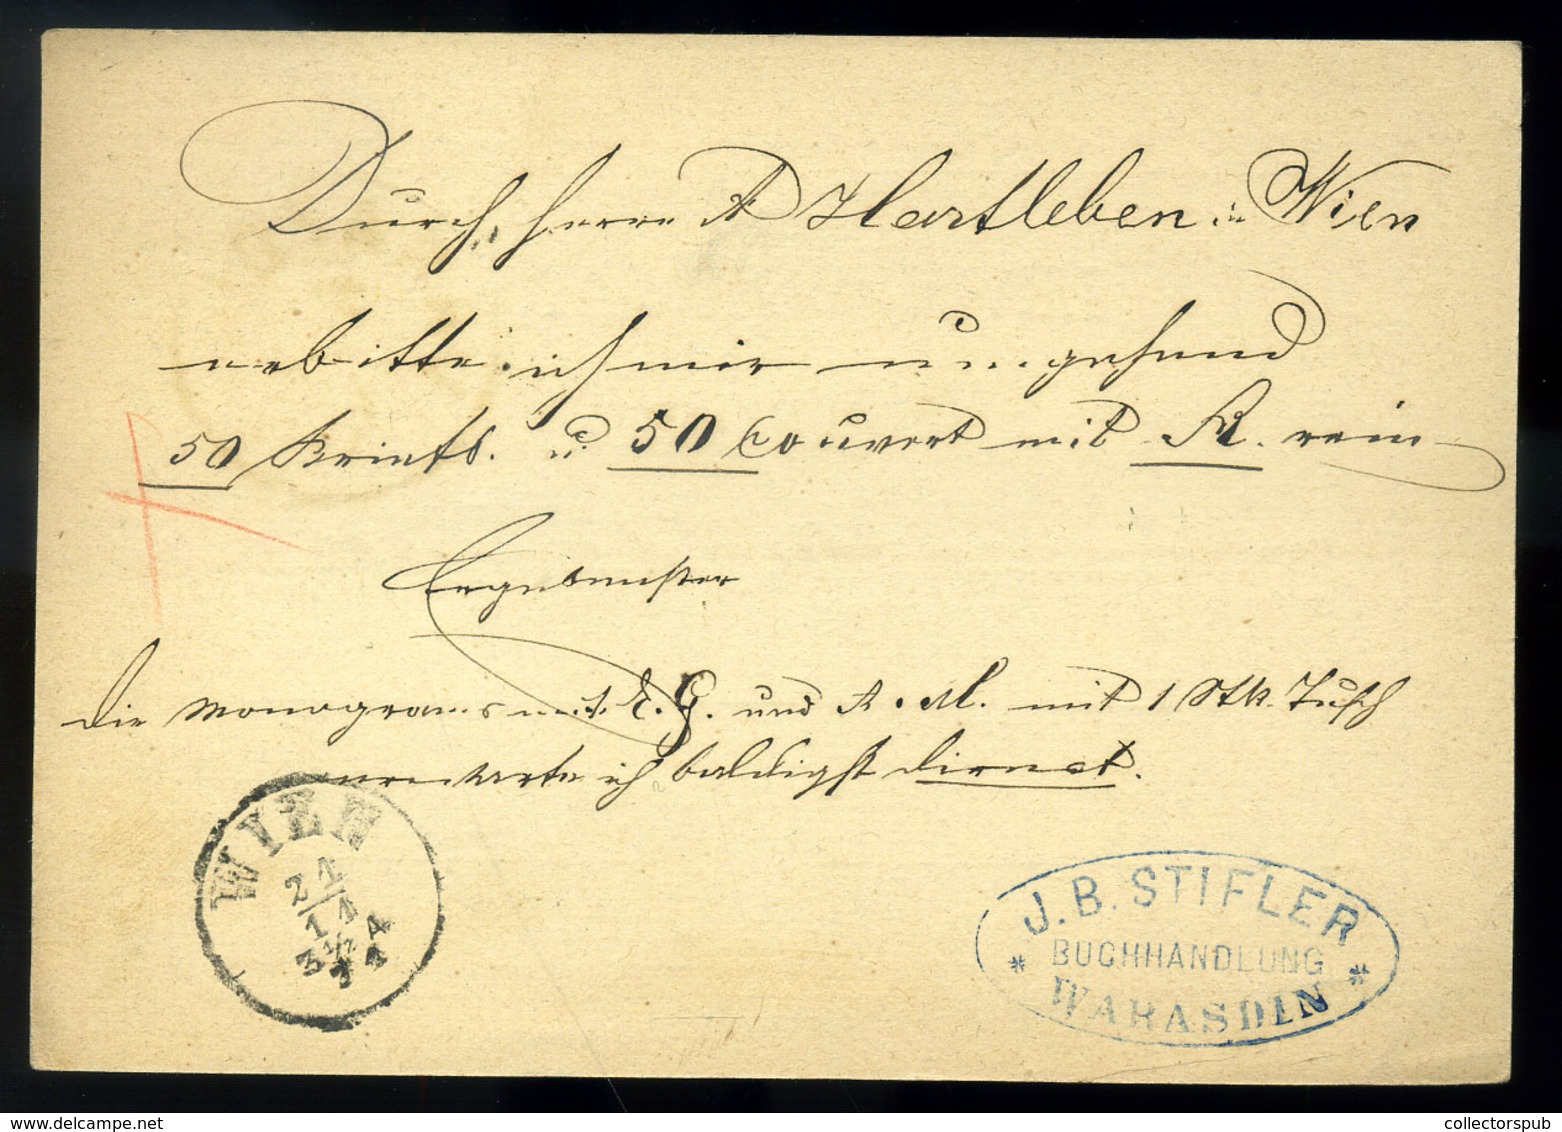 VARAZDIN 1871. Díjjegyes Levlap, Szép Bélyegzéssel Bécsbe Küldve  /  Stationery P.card Nice Pmk To Vienna - Croatia